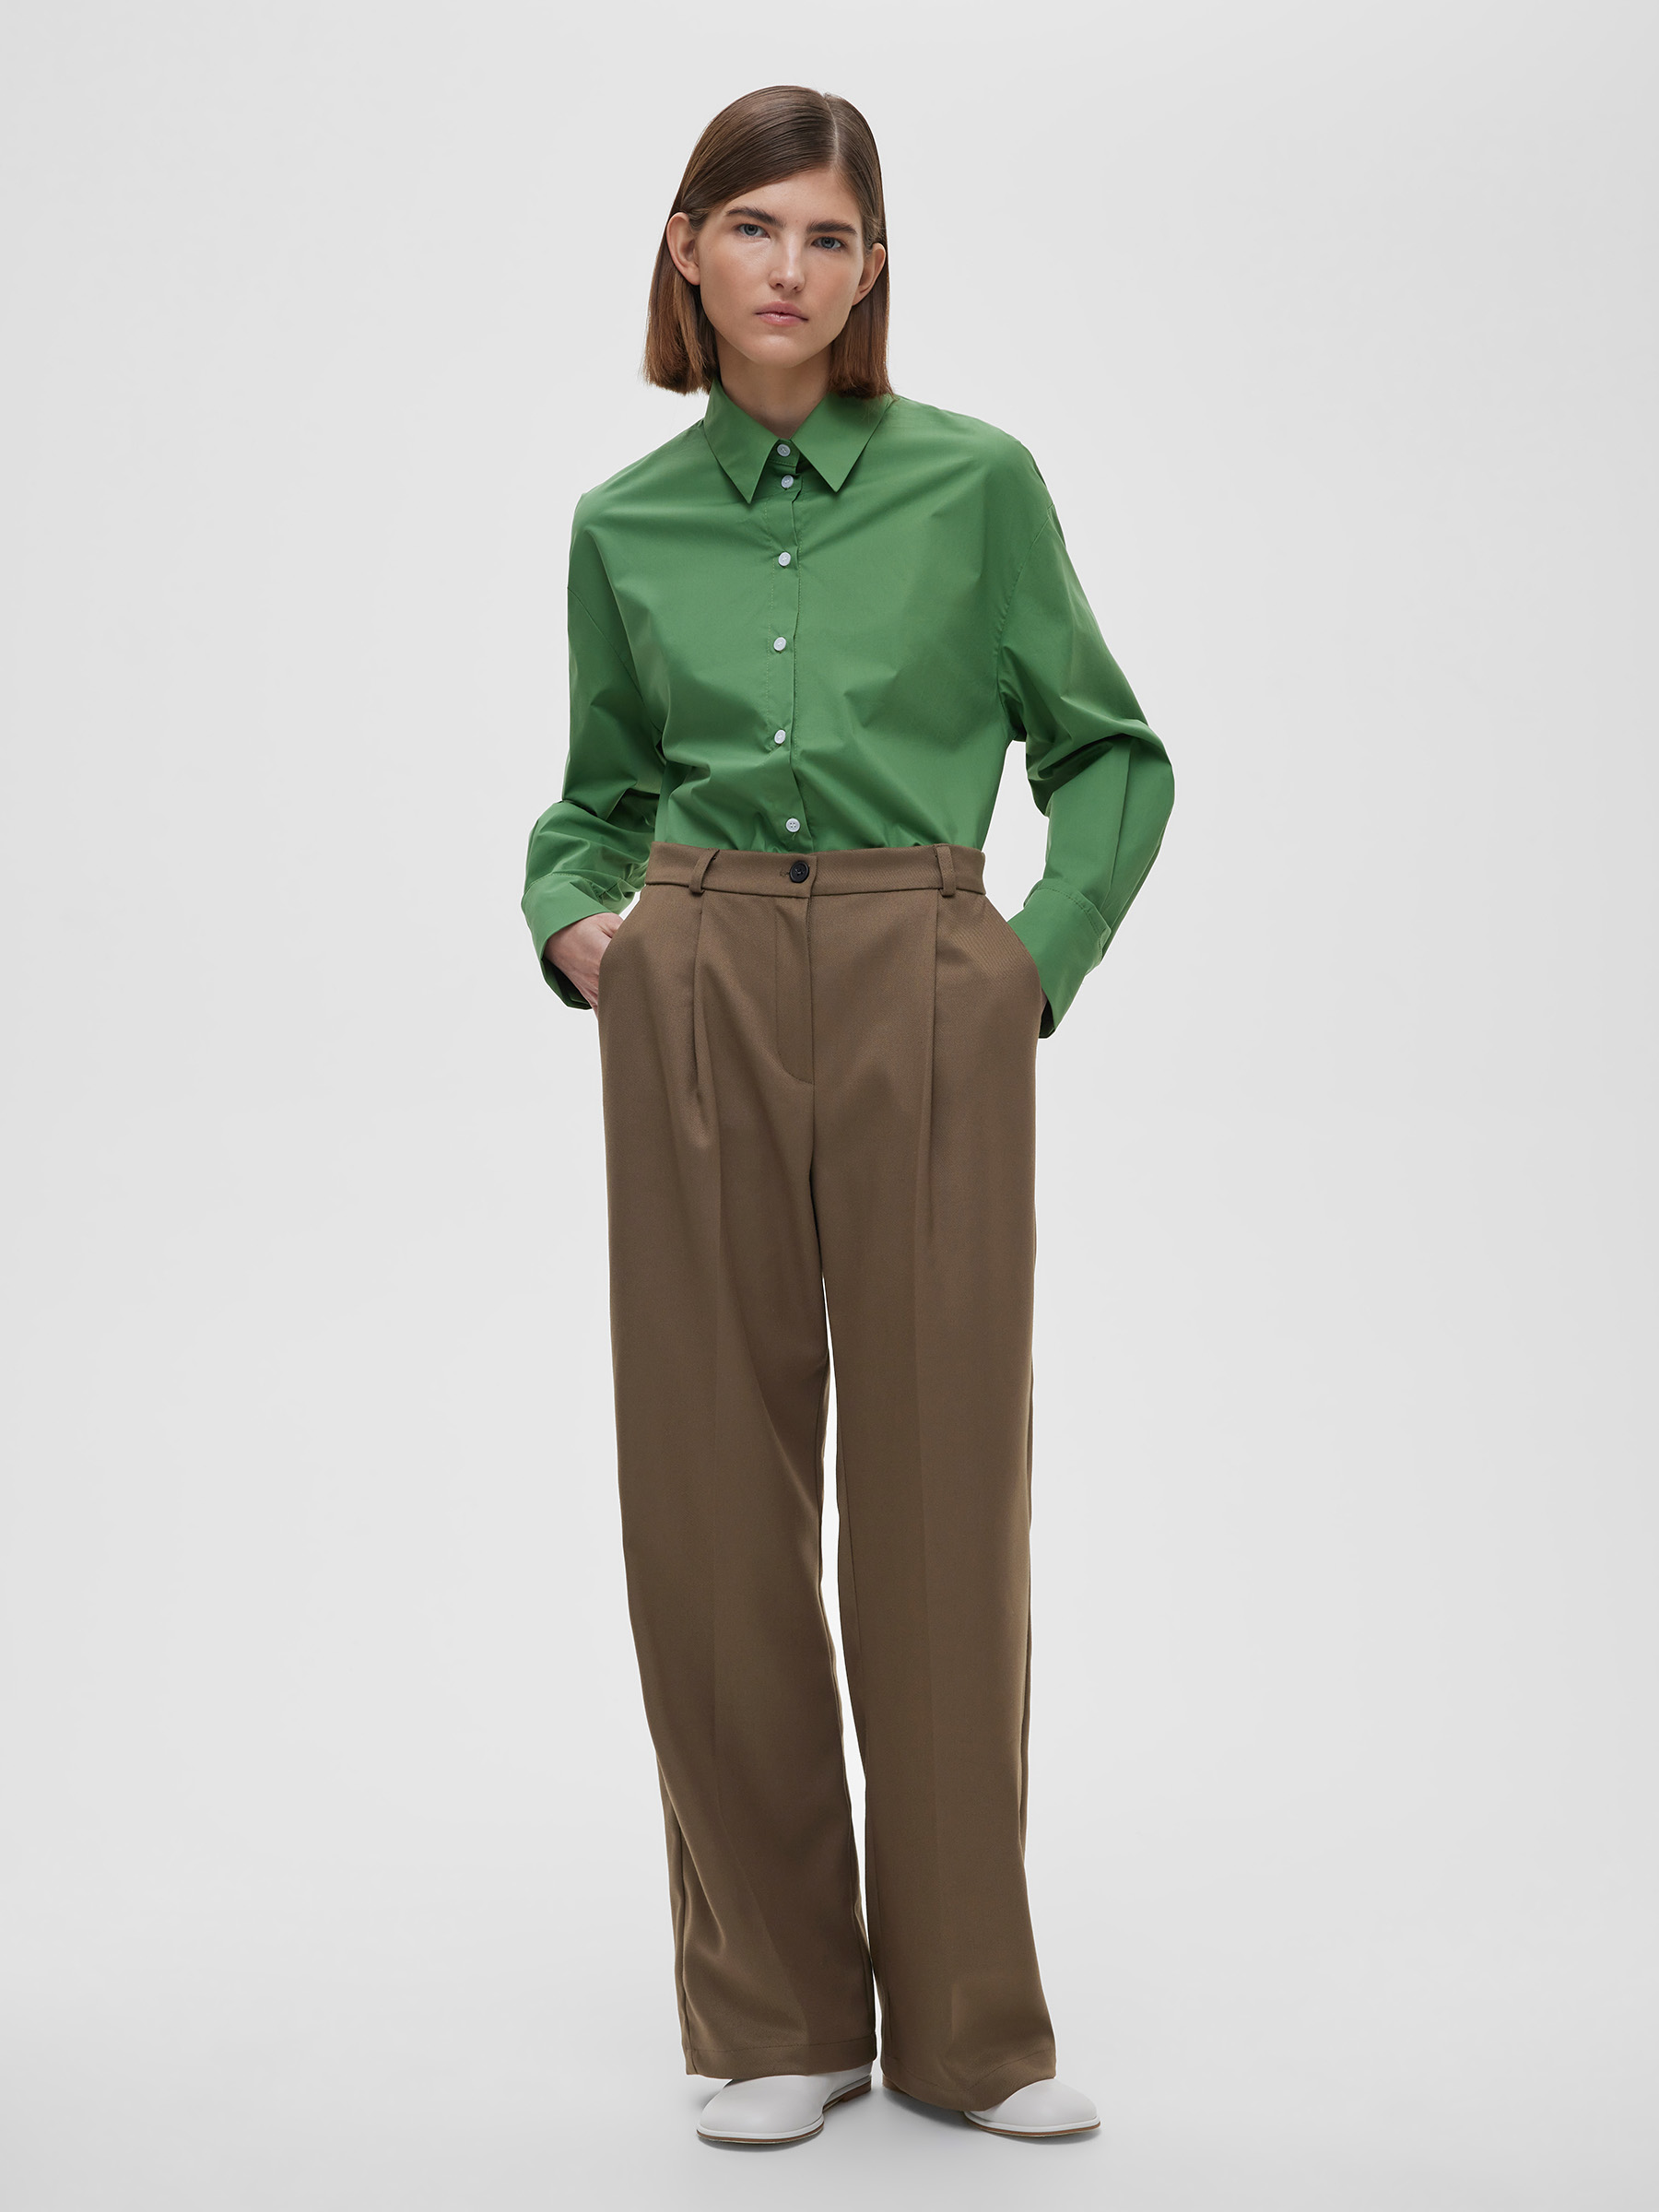 Брюки женские свободные с защипами, цвет – кофейный брюки женские цвет кофейный меланж размер 42